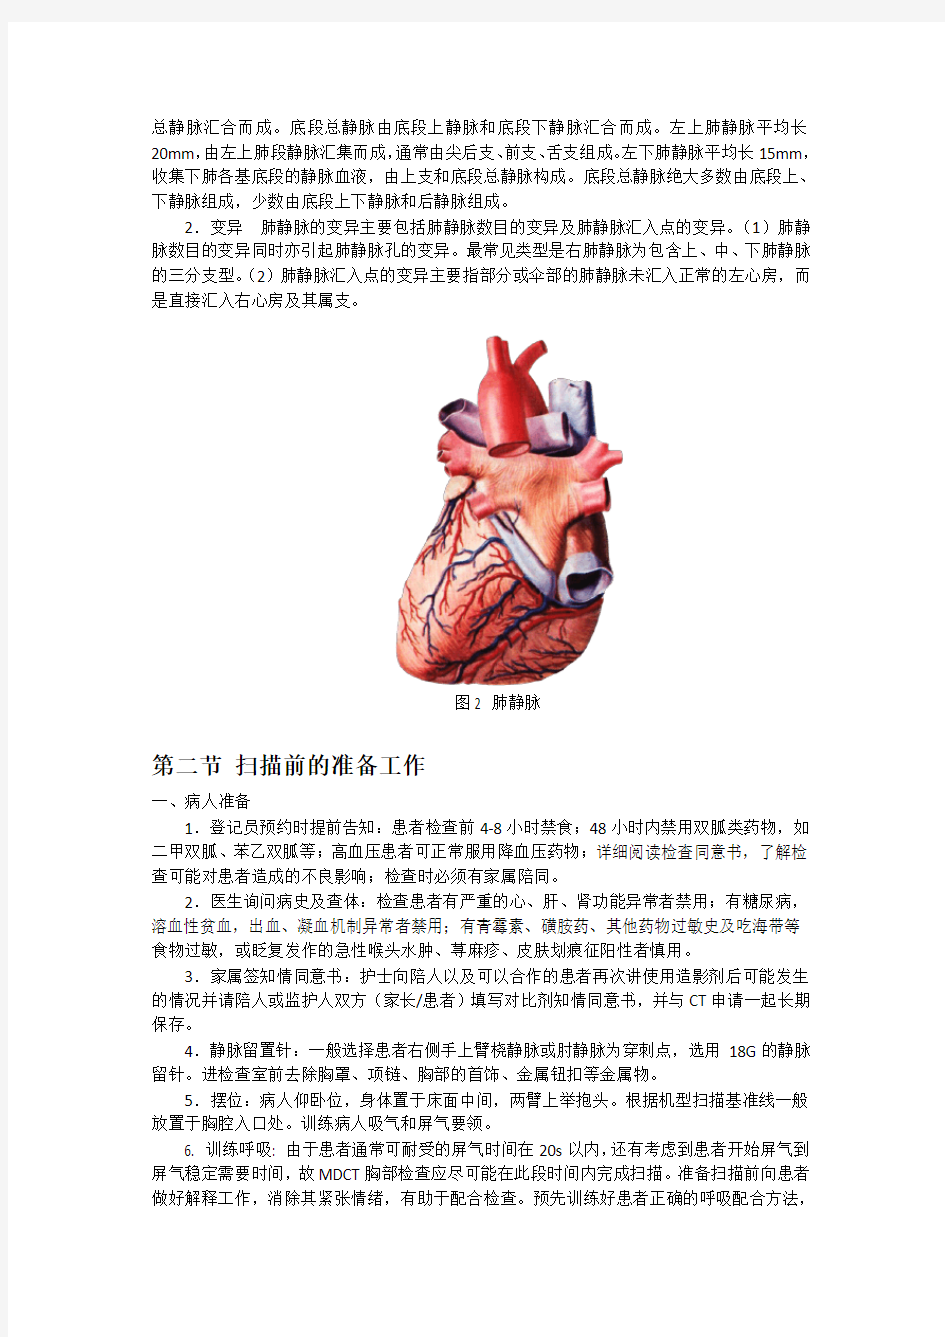 胸部血管CTA成像技术